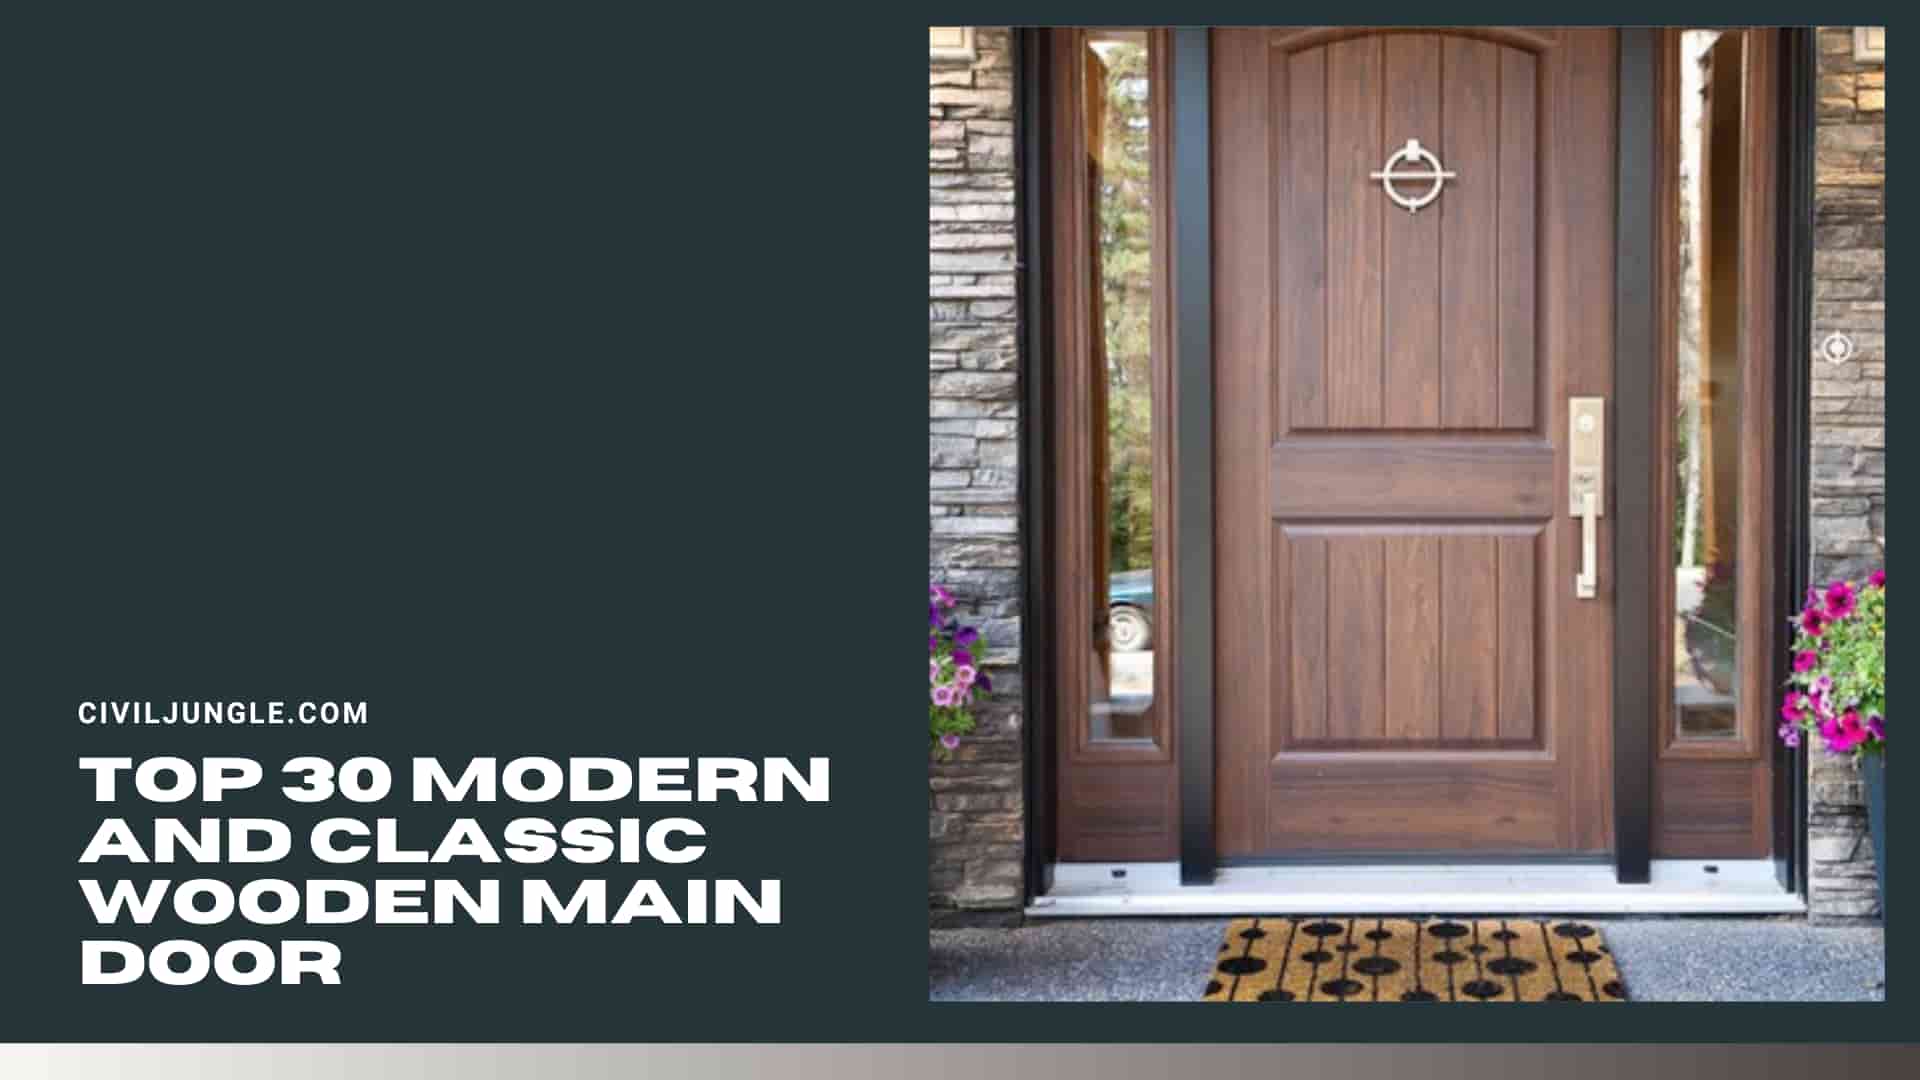 Top 30 Modern And Classic Wooden Main Door